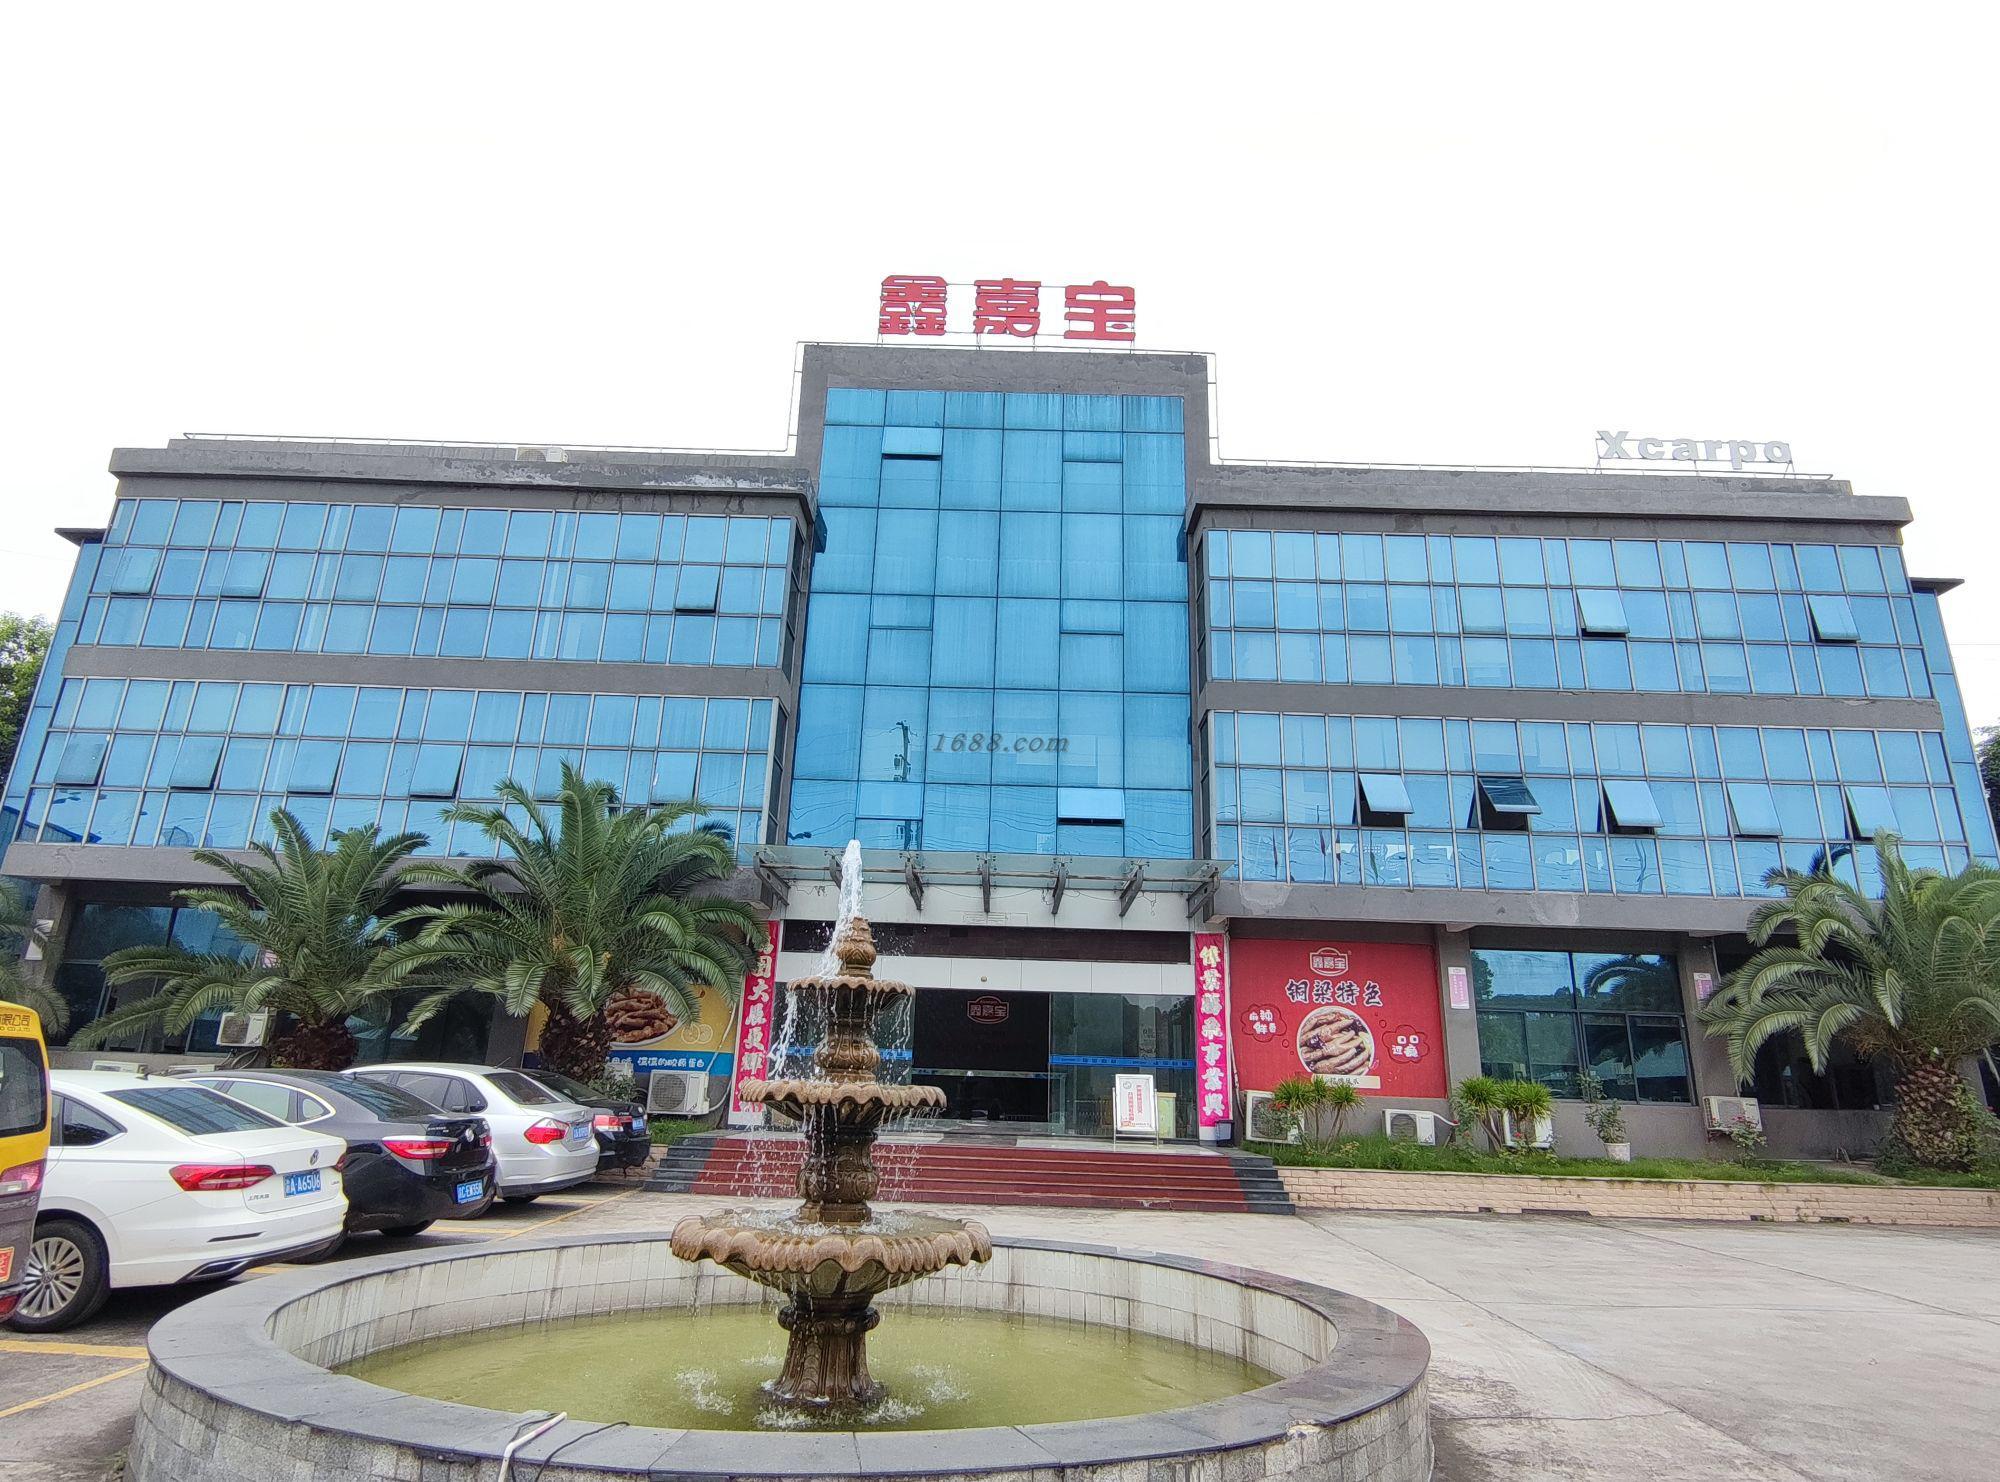 Chongqing Xinjiabao Food Co., Ltd